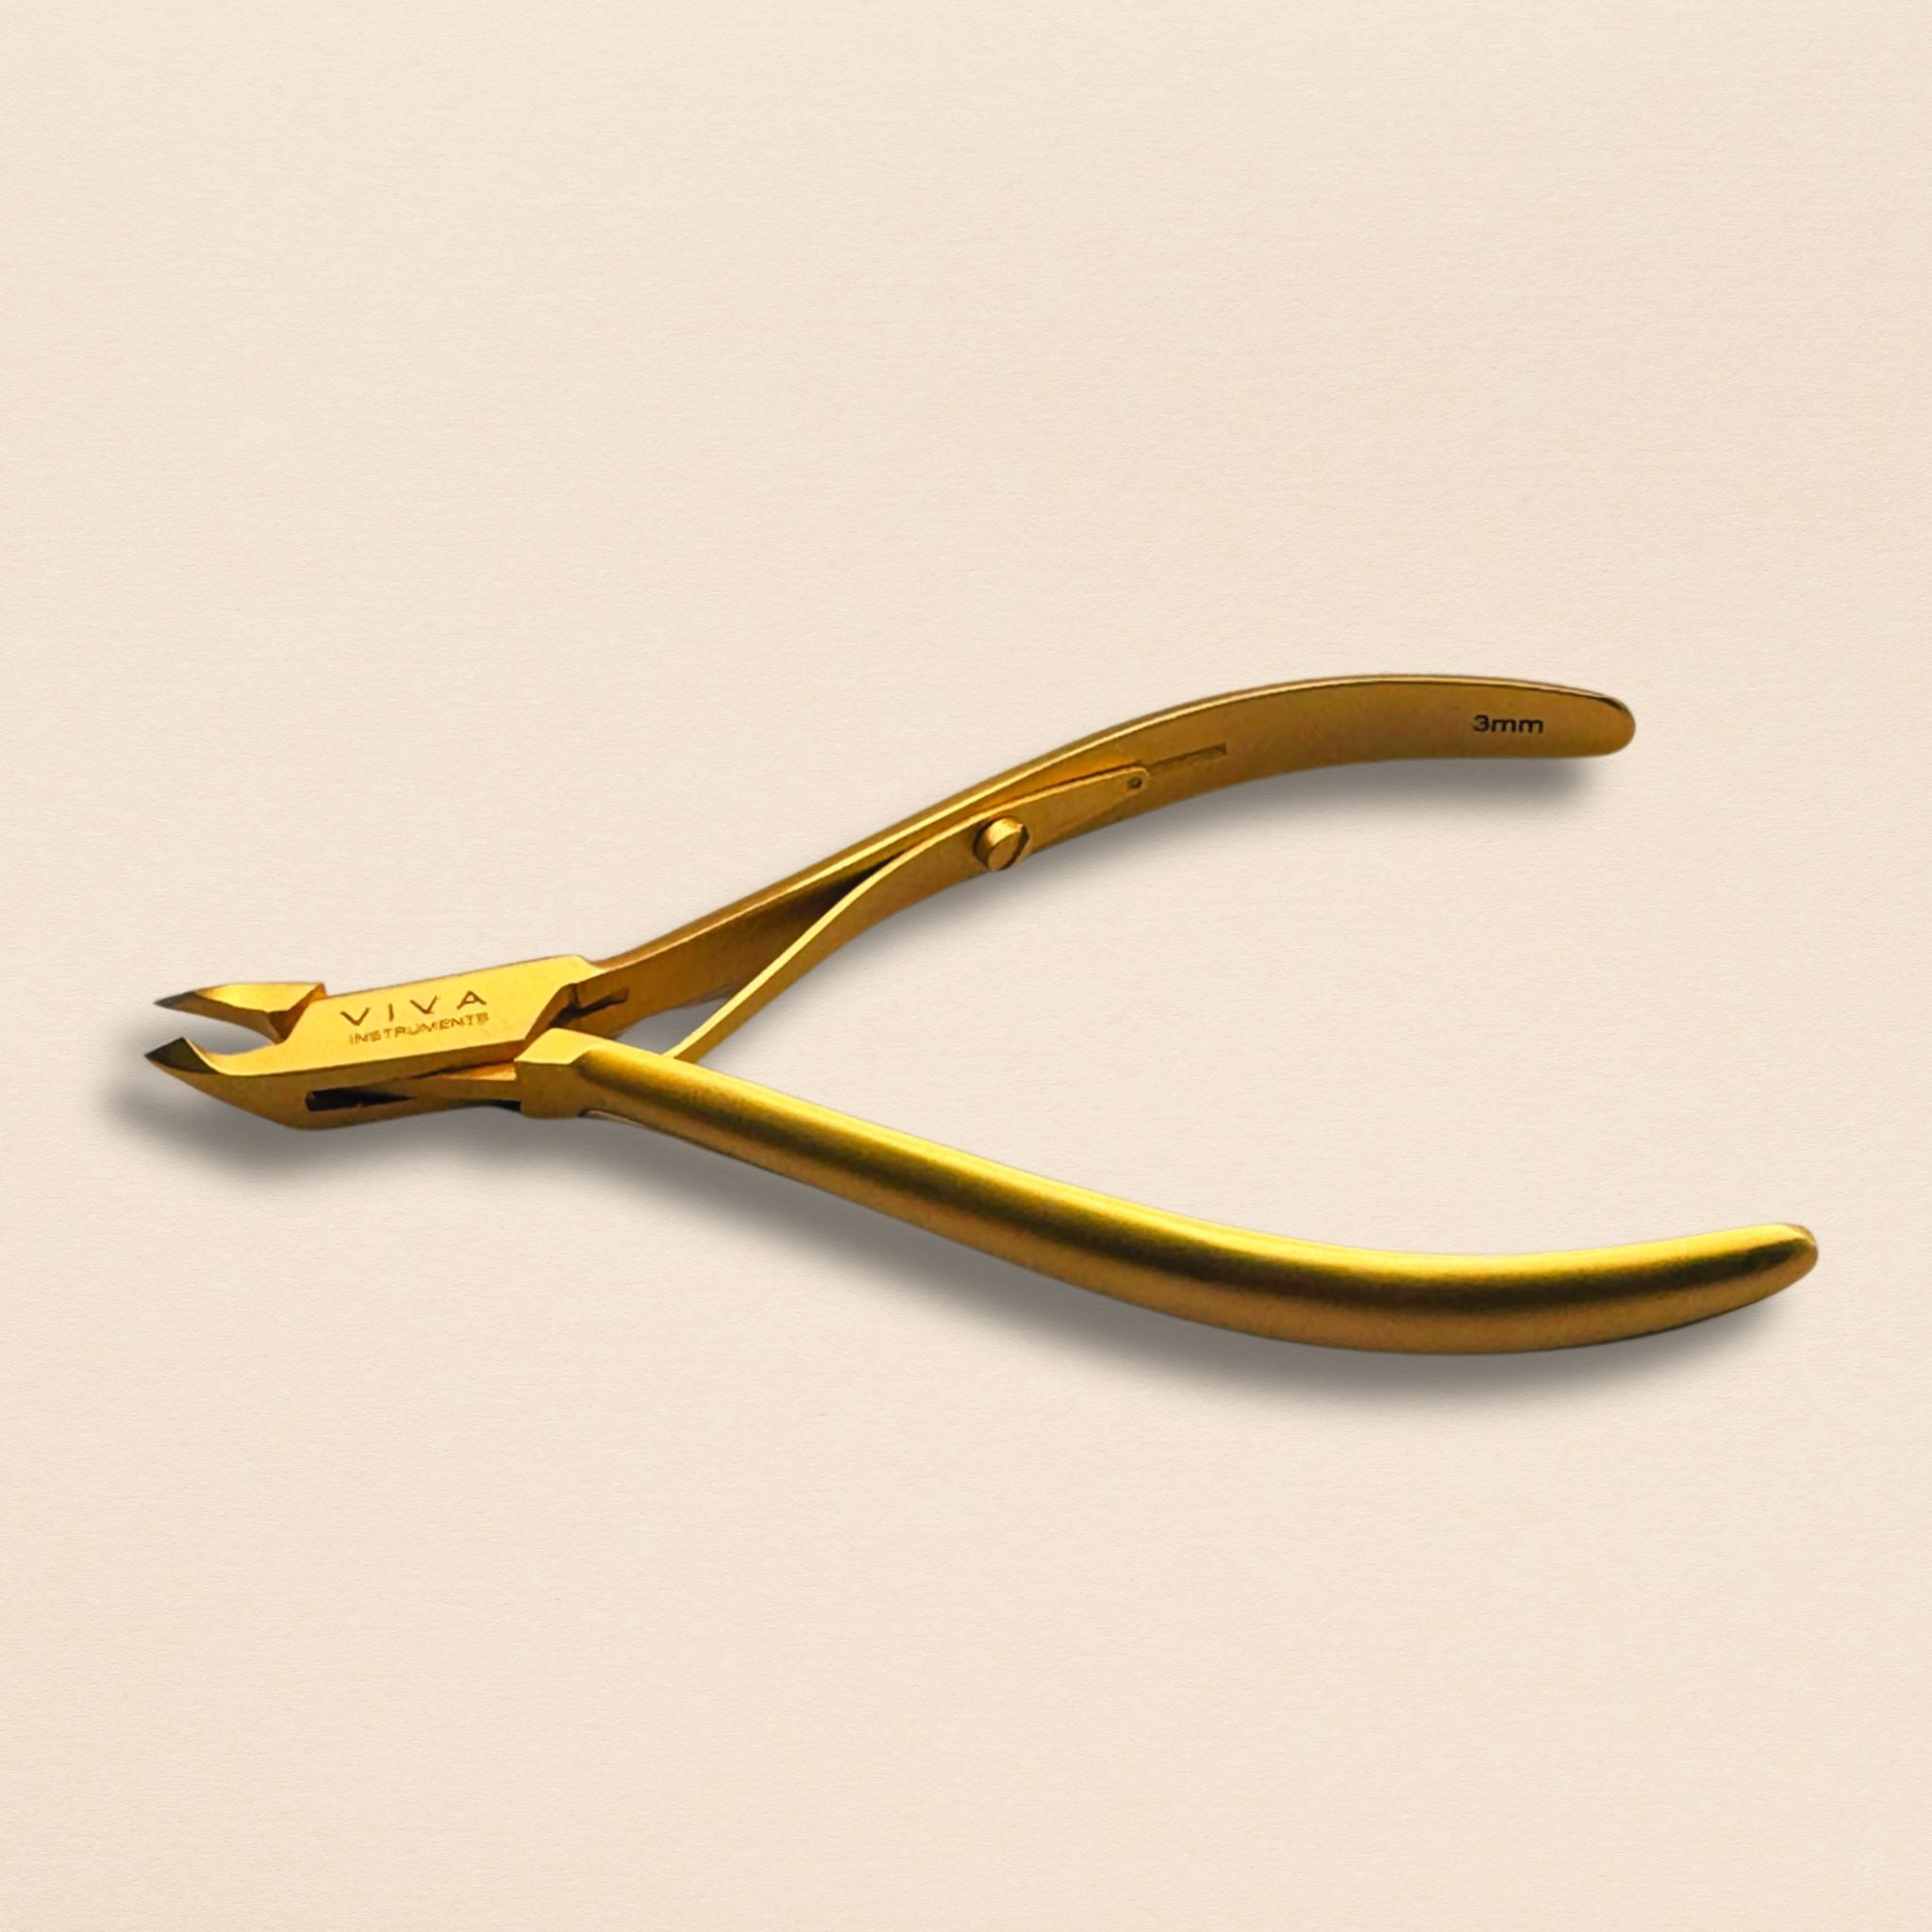 Cuticle nipper cutter - viva instruments